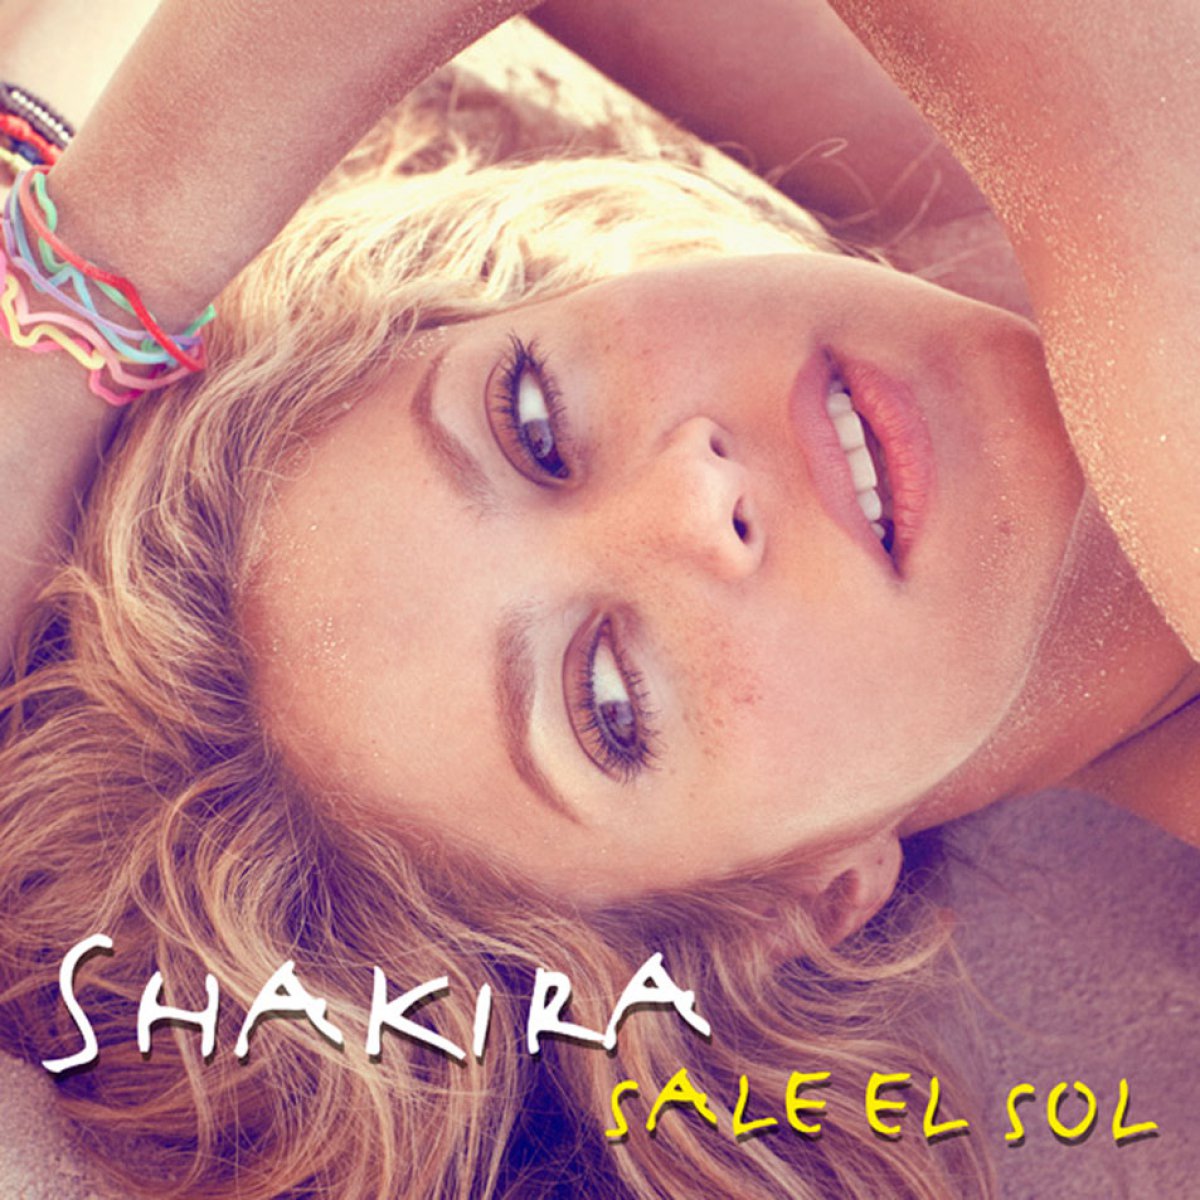 La evolución de las portadas de Shakira, disco a disco Fotogalería